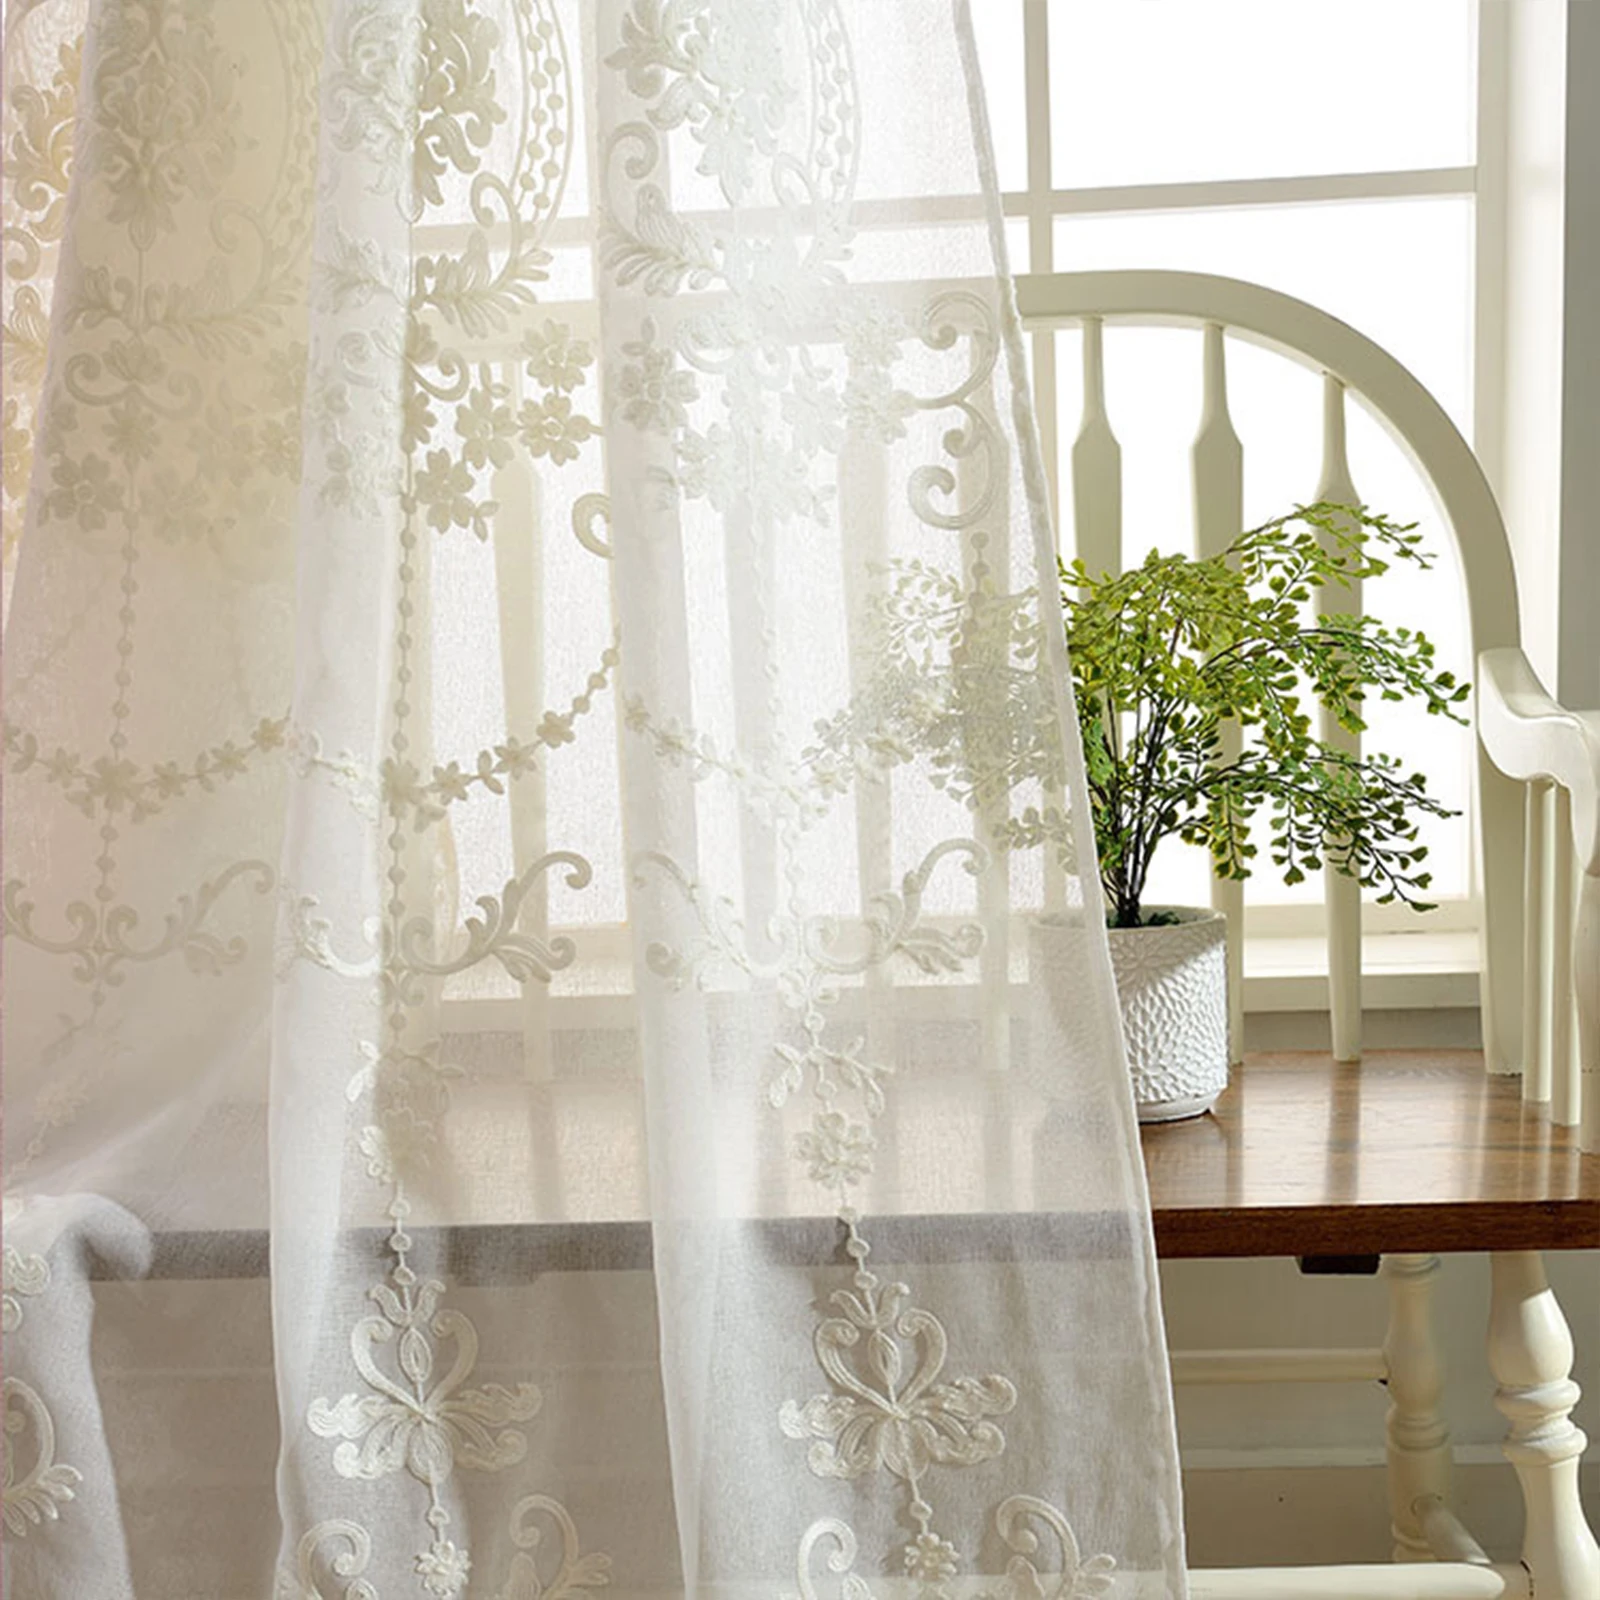 Вышитые занавески розового и белого цветов с жаккардовым узором, прозрачные европейские тюли для гостиной, декоративные панели на окно.